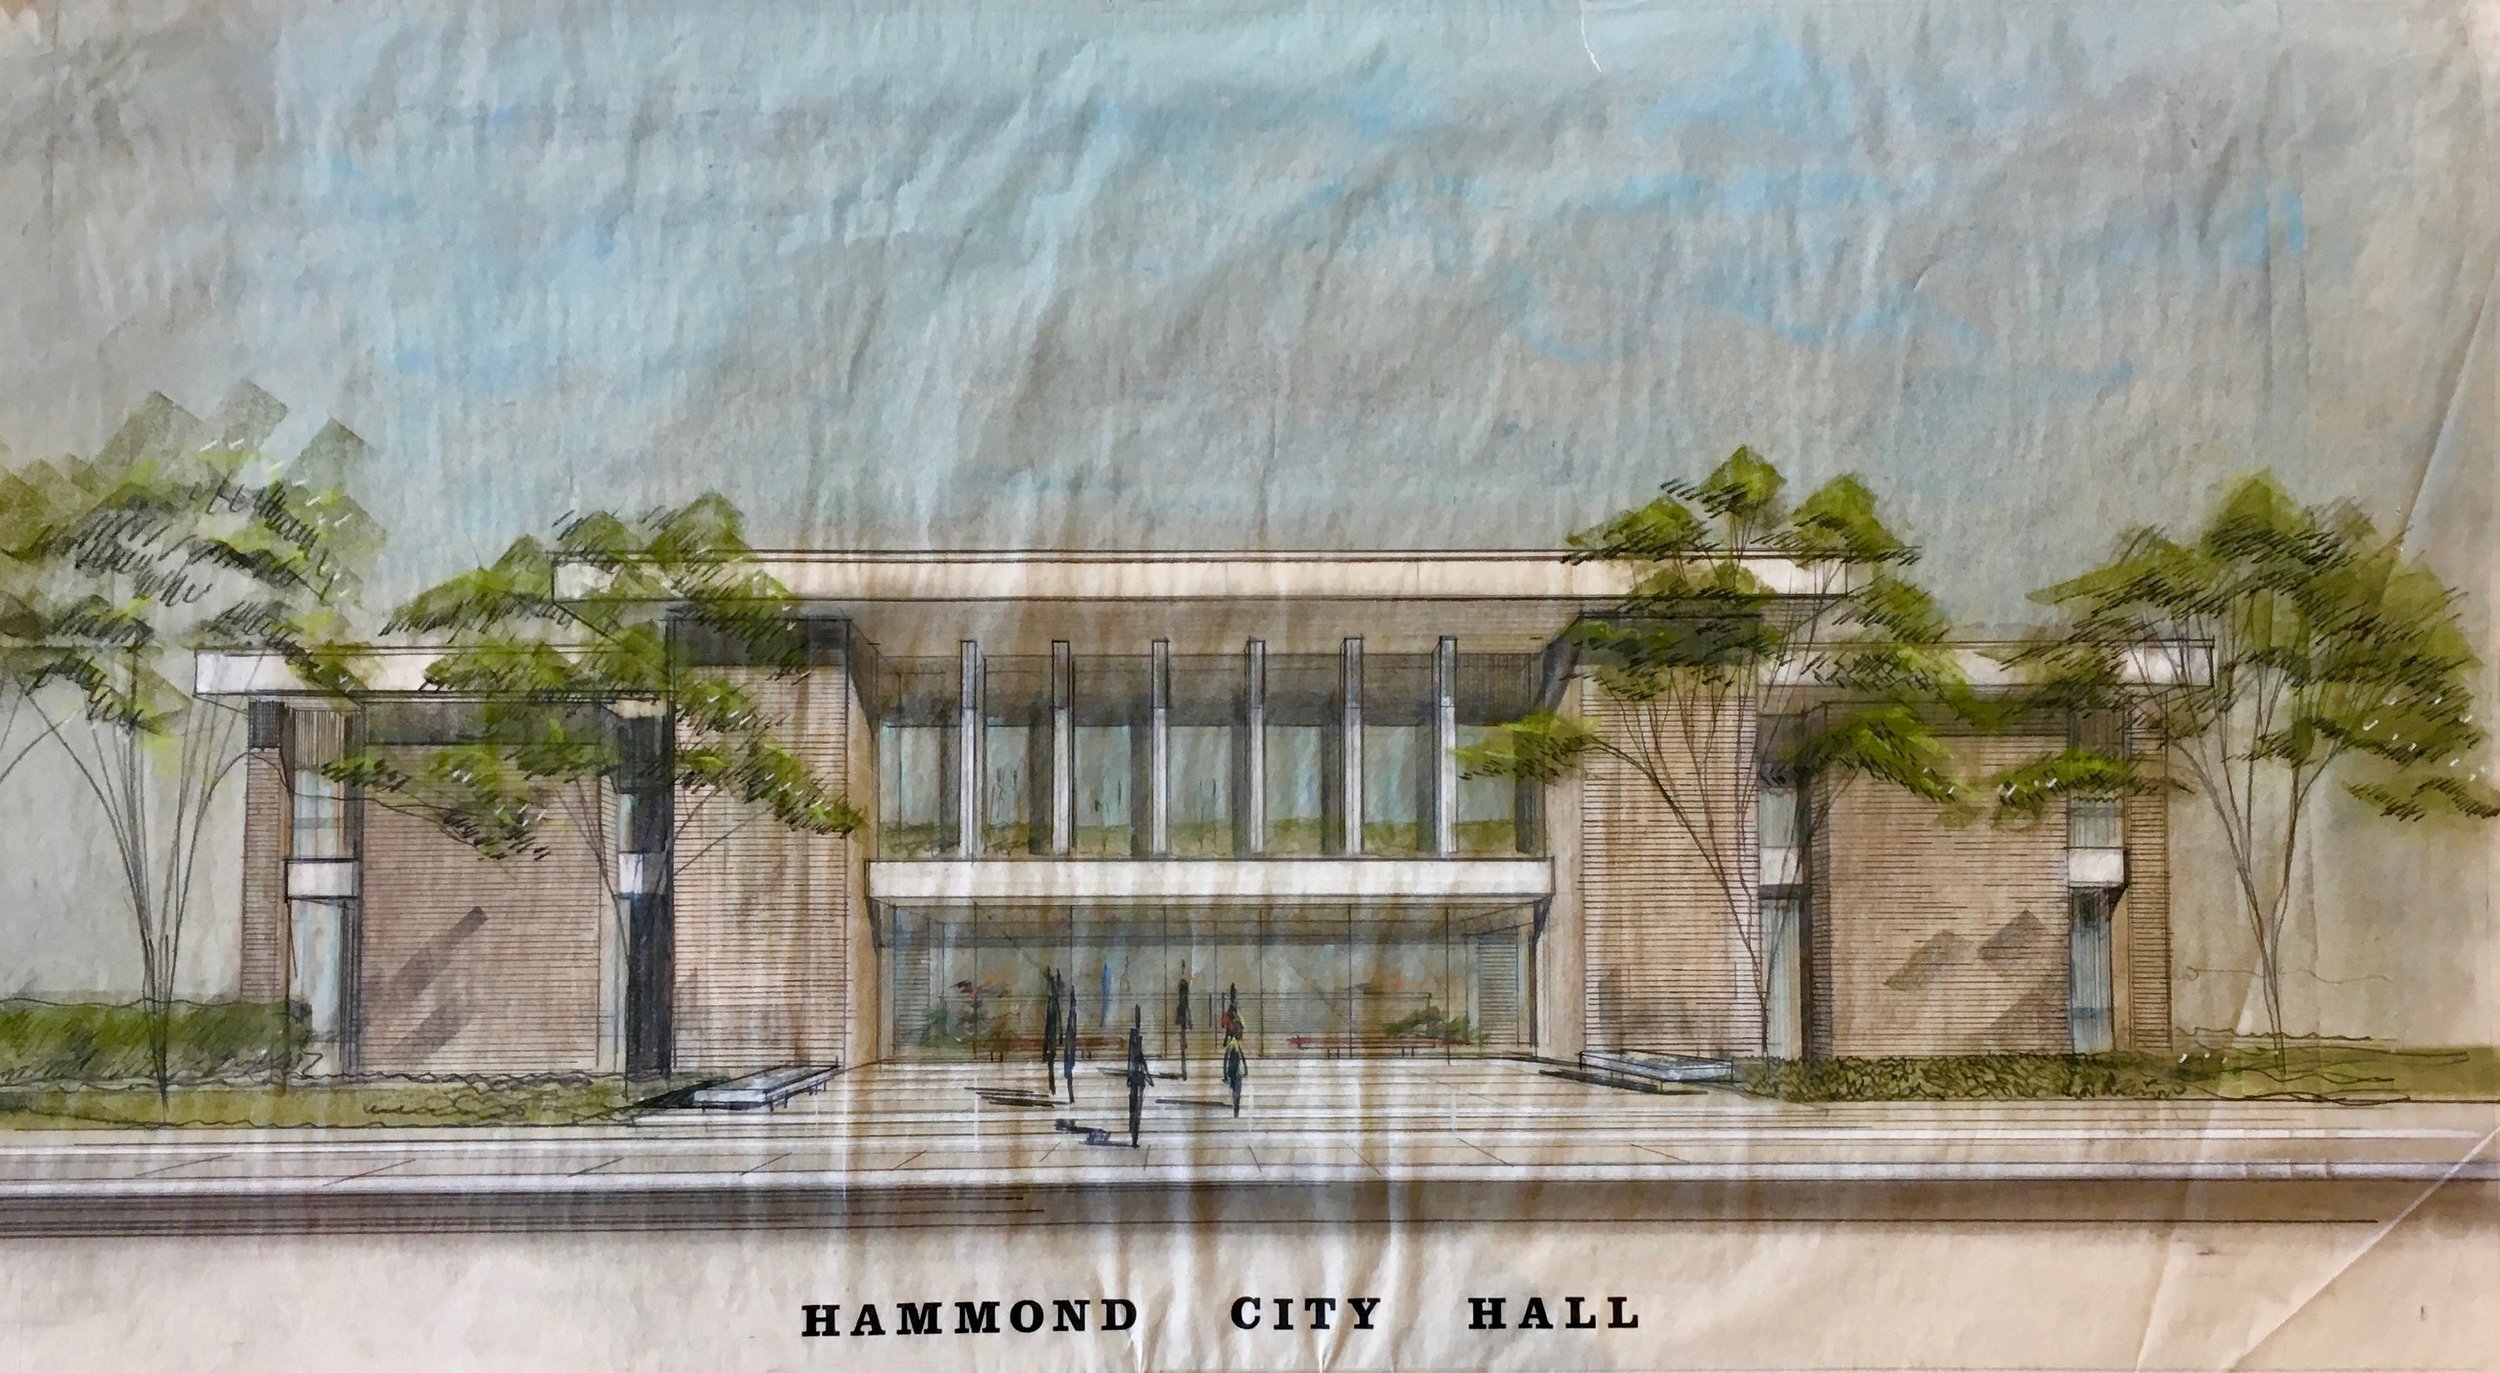 CITY HALL_Desmond_City Hall_Hammond LA_Elevation in Color.jpg